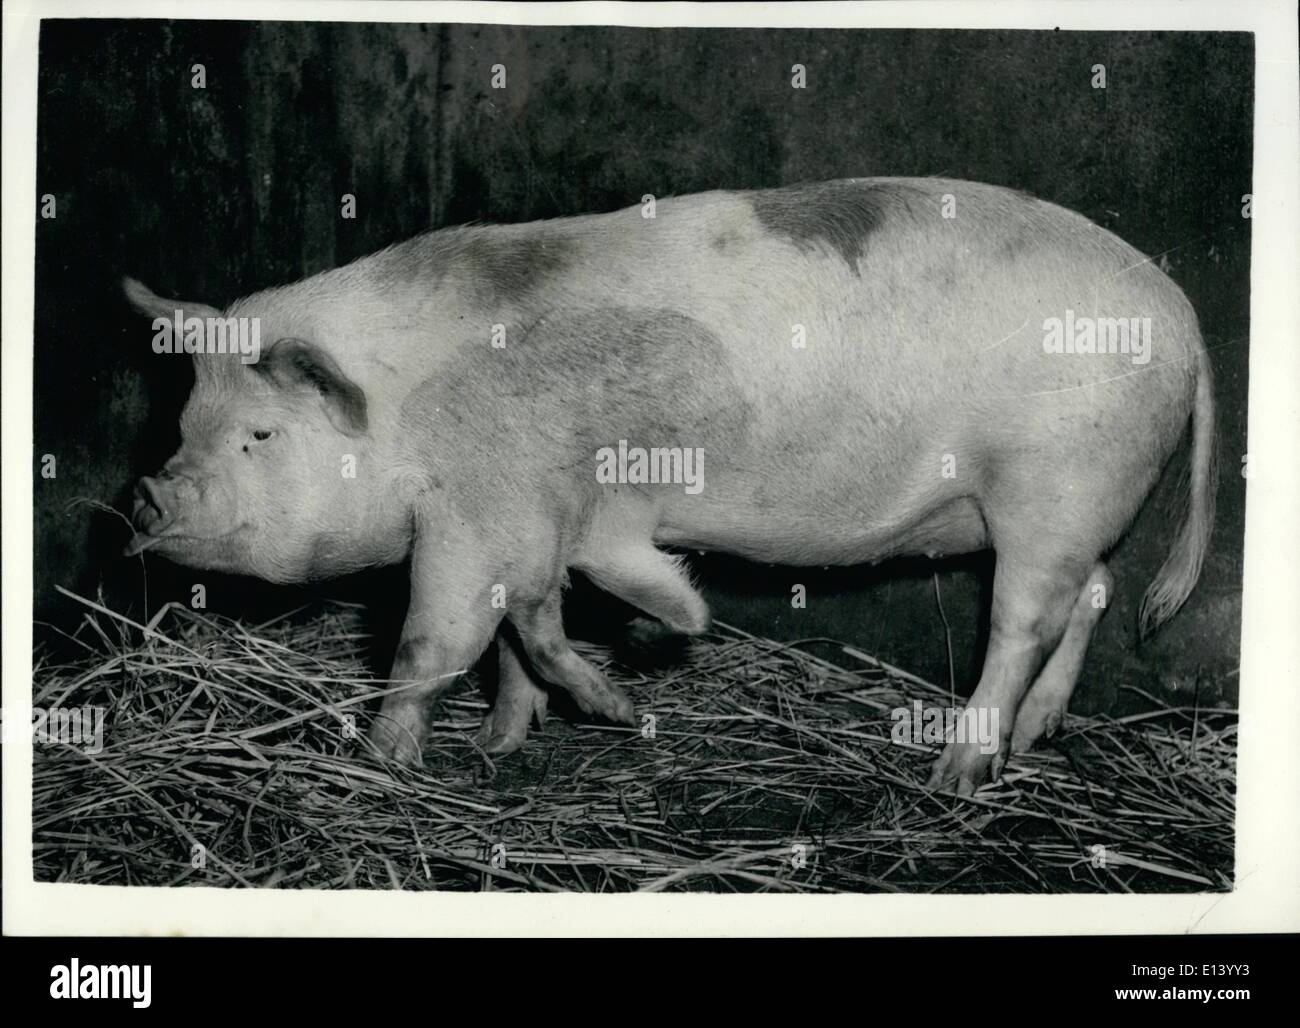 27. März 2012 - ein Schwein mit sechs Traber. Auf einem Bauernhof Japaneses ausflippen. Viel Interesse unter den Liebhaber der Schweins Traber - durch dieses Bild eines Schweins, aufgewachsen auf einem Bauernhof in Japan erstellt werden, es hat sechs Beine, aber ist nicht das Ergebnis der wissenschaftlichen Bemühungen. Es ist ein Freak, aber Bauern sind daran interessiert zu sehen, ob es sich bei seinen Nachkommen, so gebe es sicherlich Schweinehaltung Berichten wird ein "New Look" Stockfoto